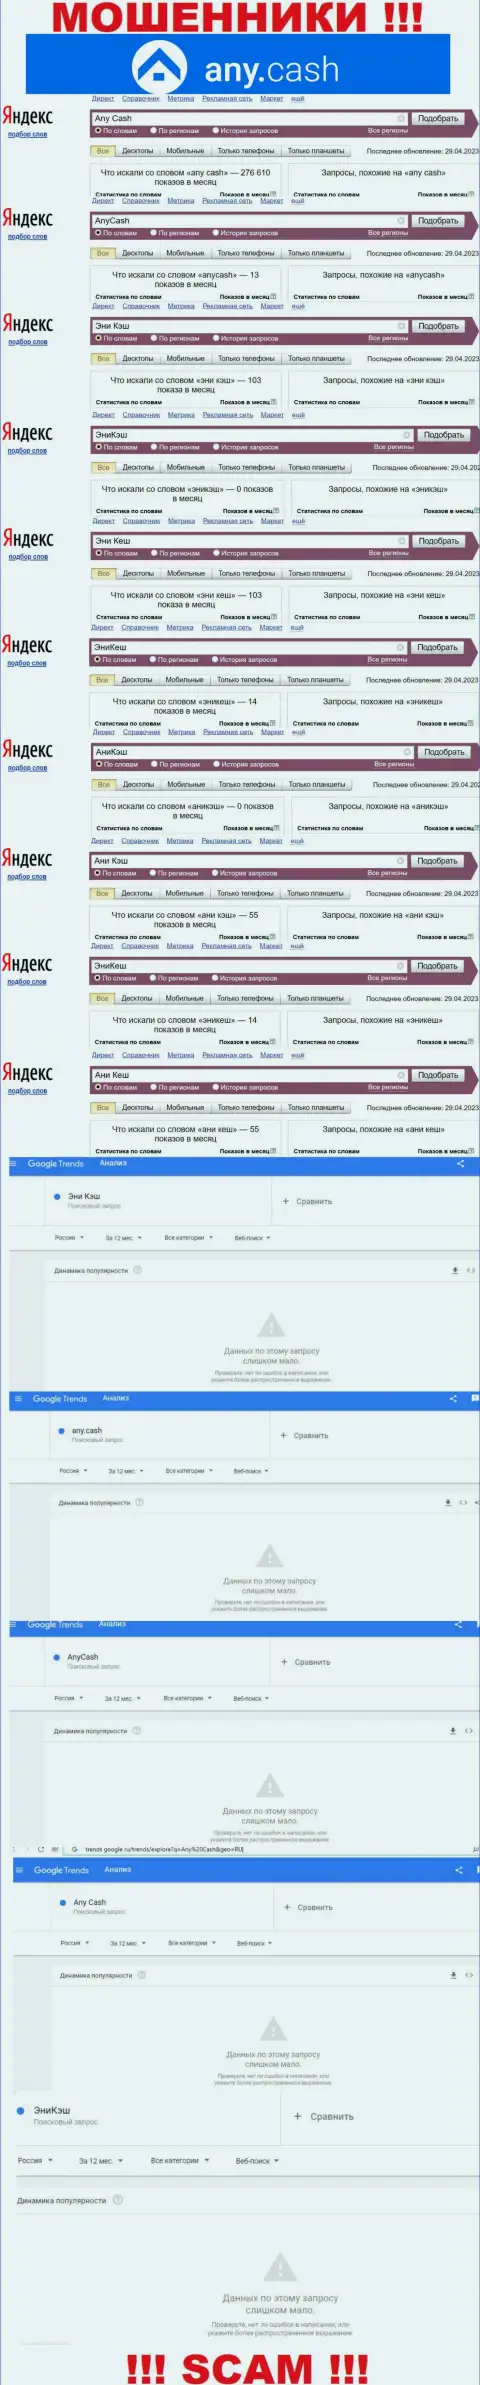 Скриншот результатов online запросов по противозаконно действующей организации Any Cash